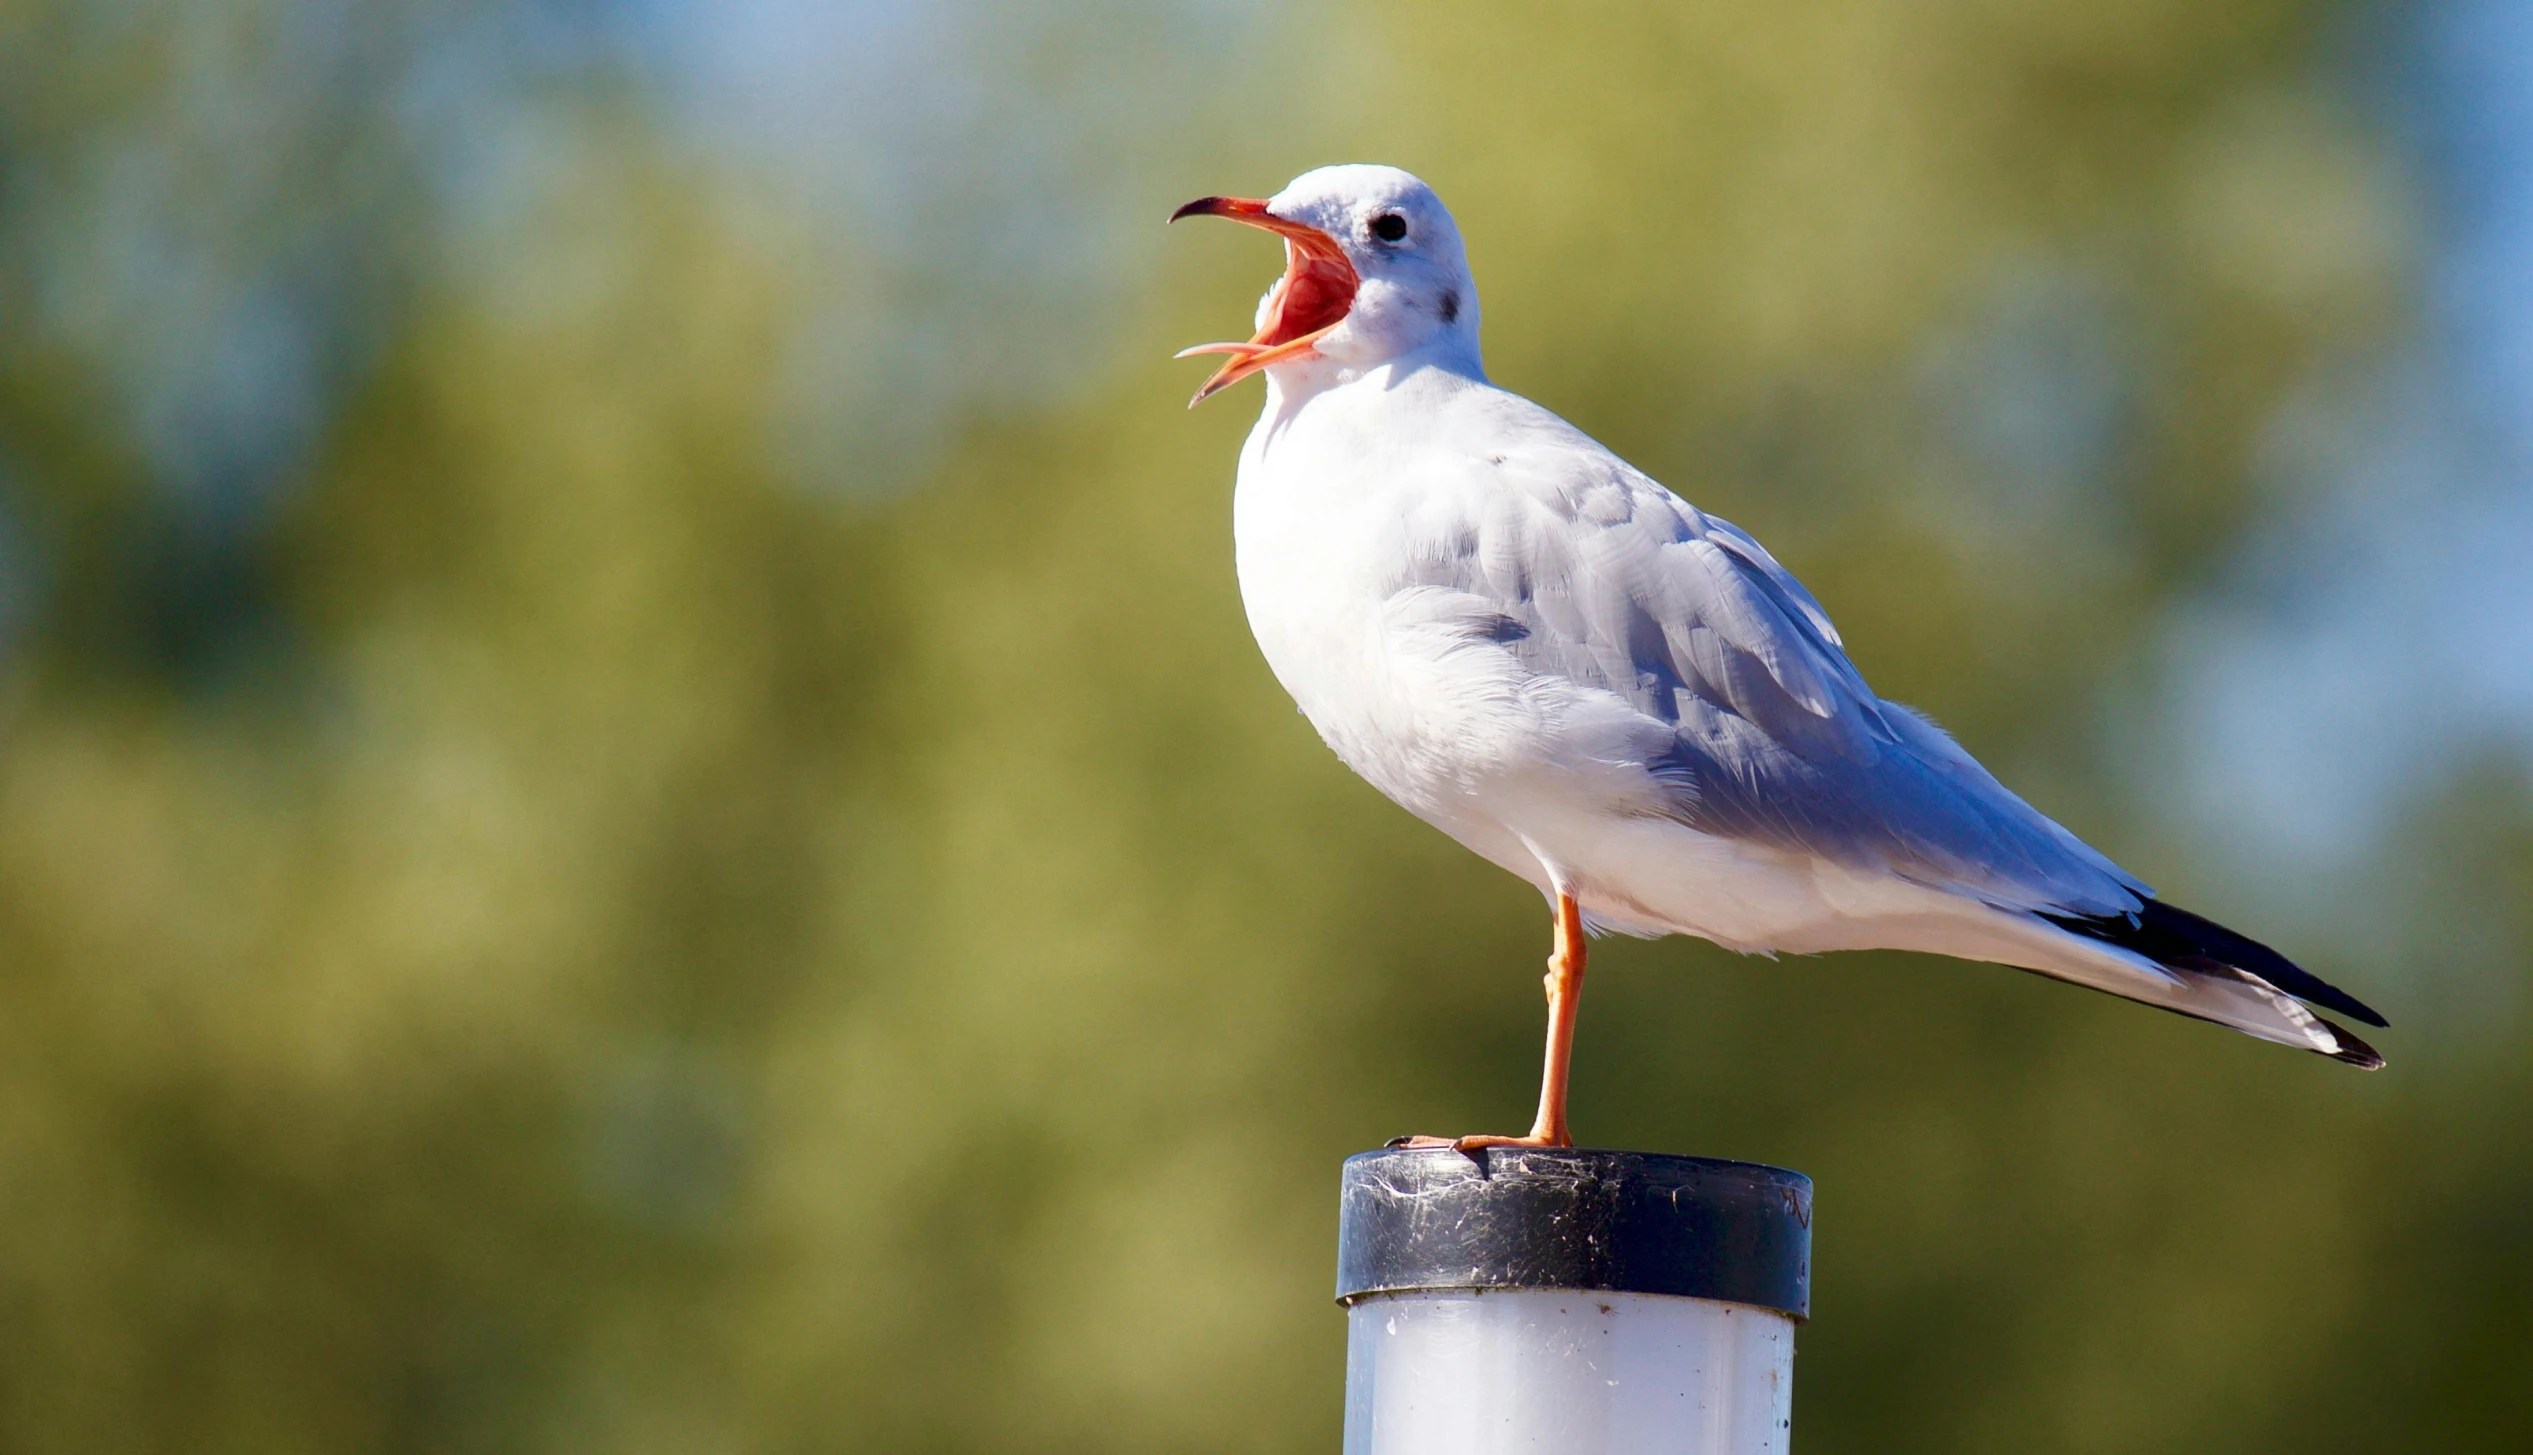 a close up of a bird on top of a pole, on a pedestal, white head, yawning, albino